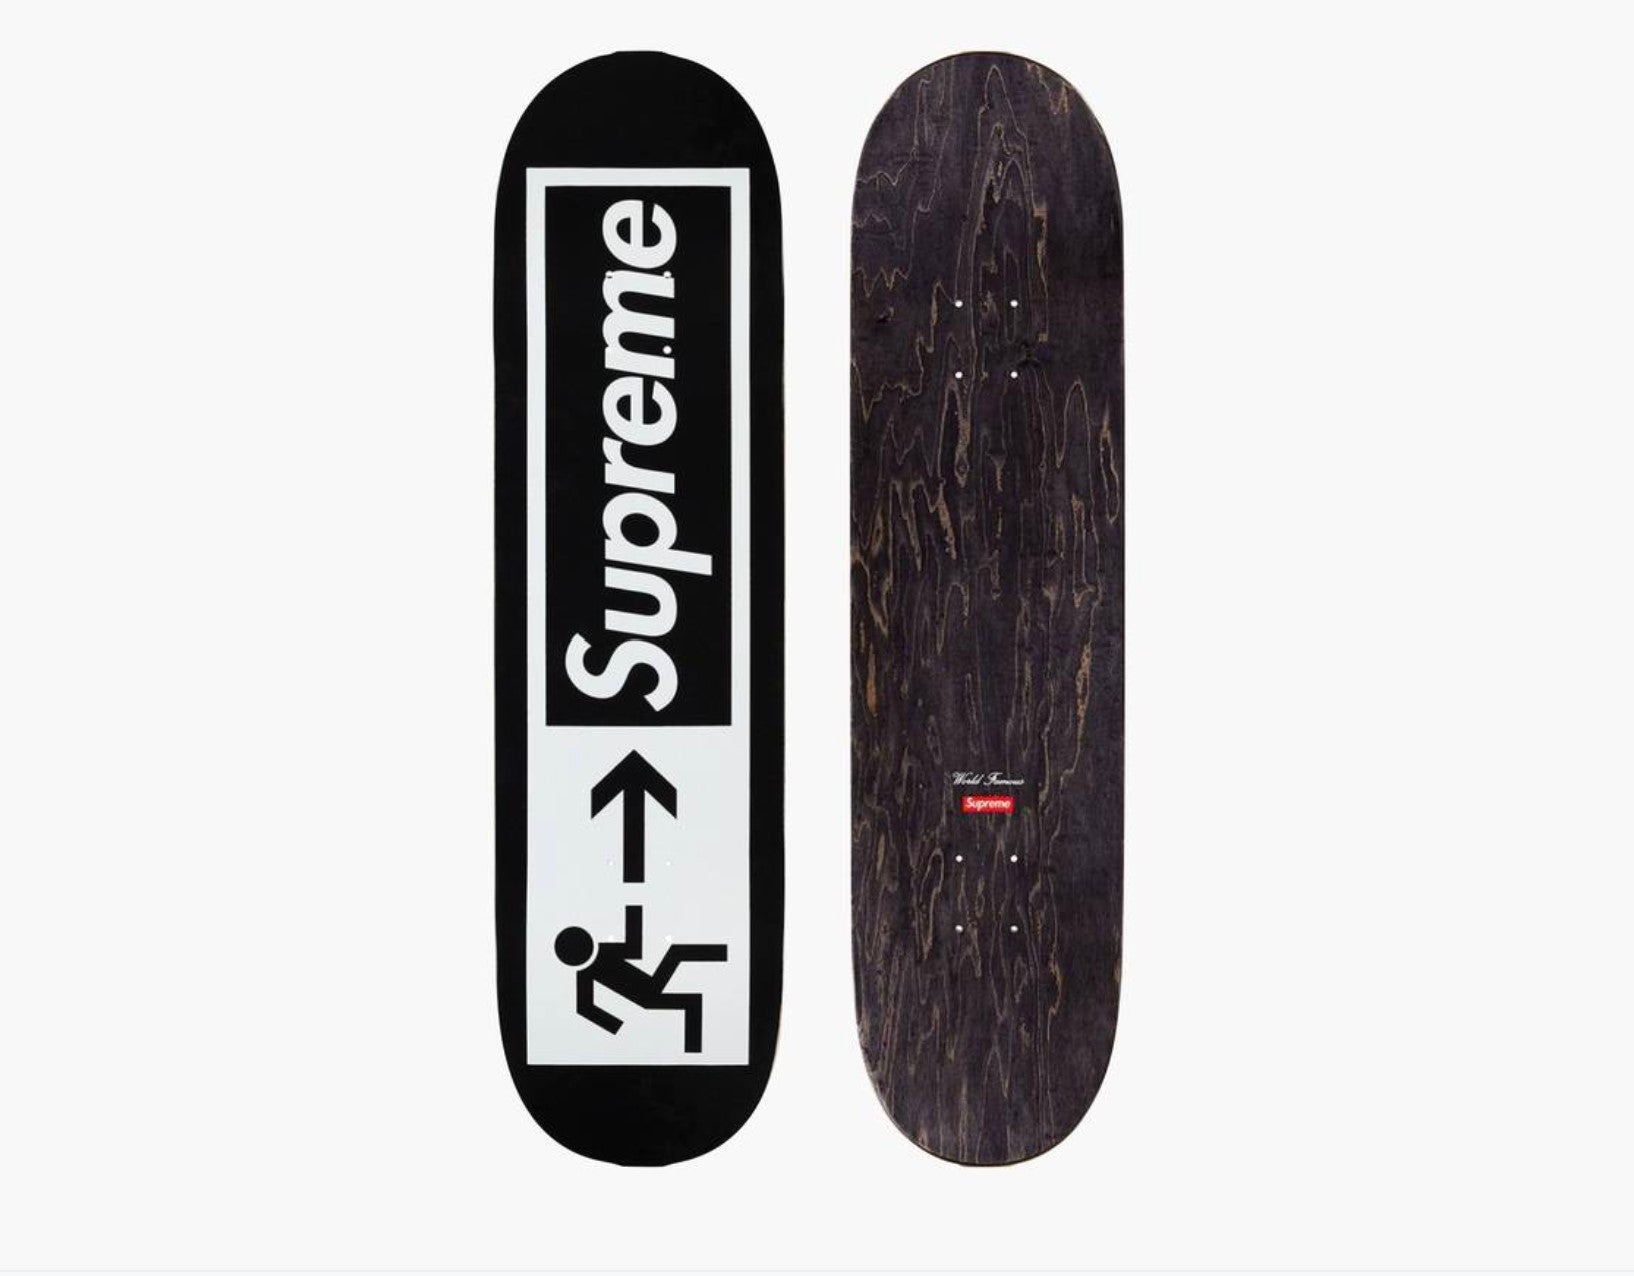 Supreme Stickers Skateboard Deck Black – New Leaf